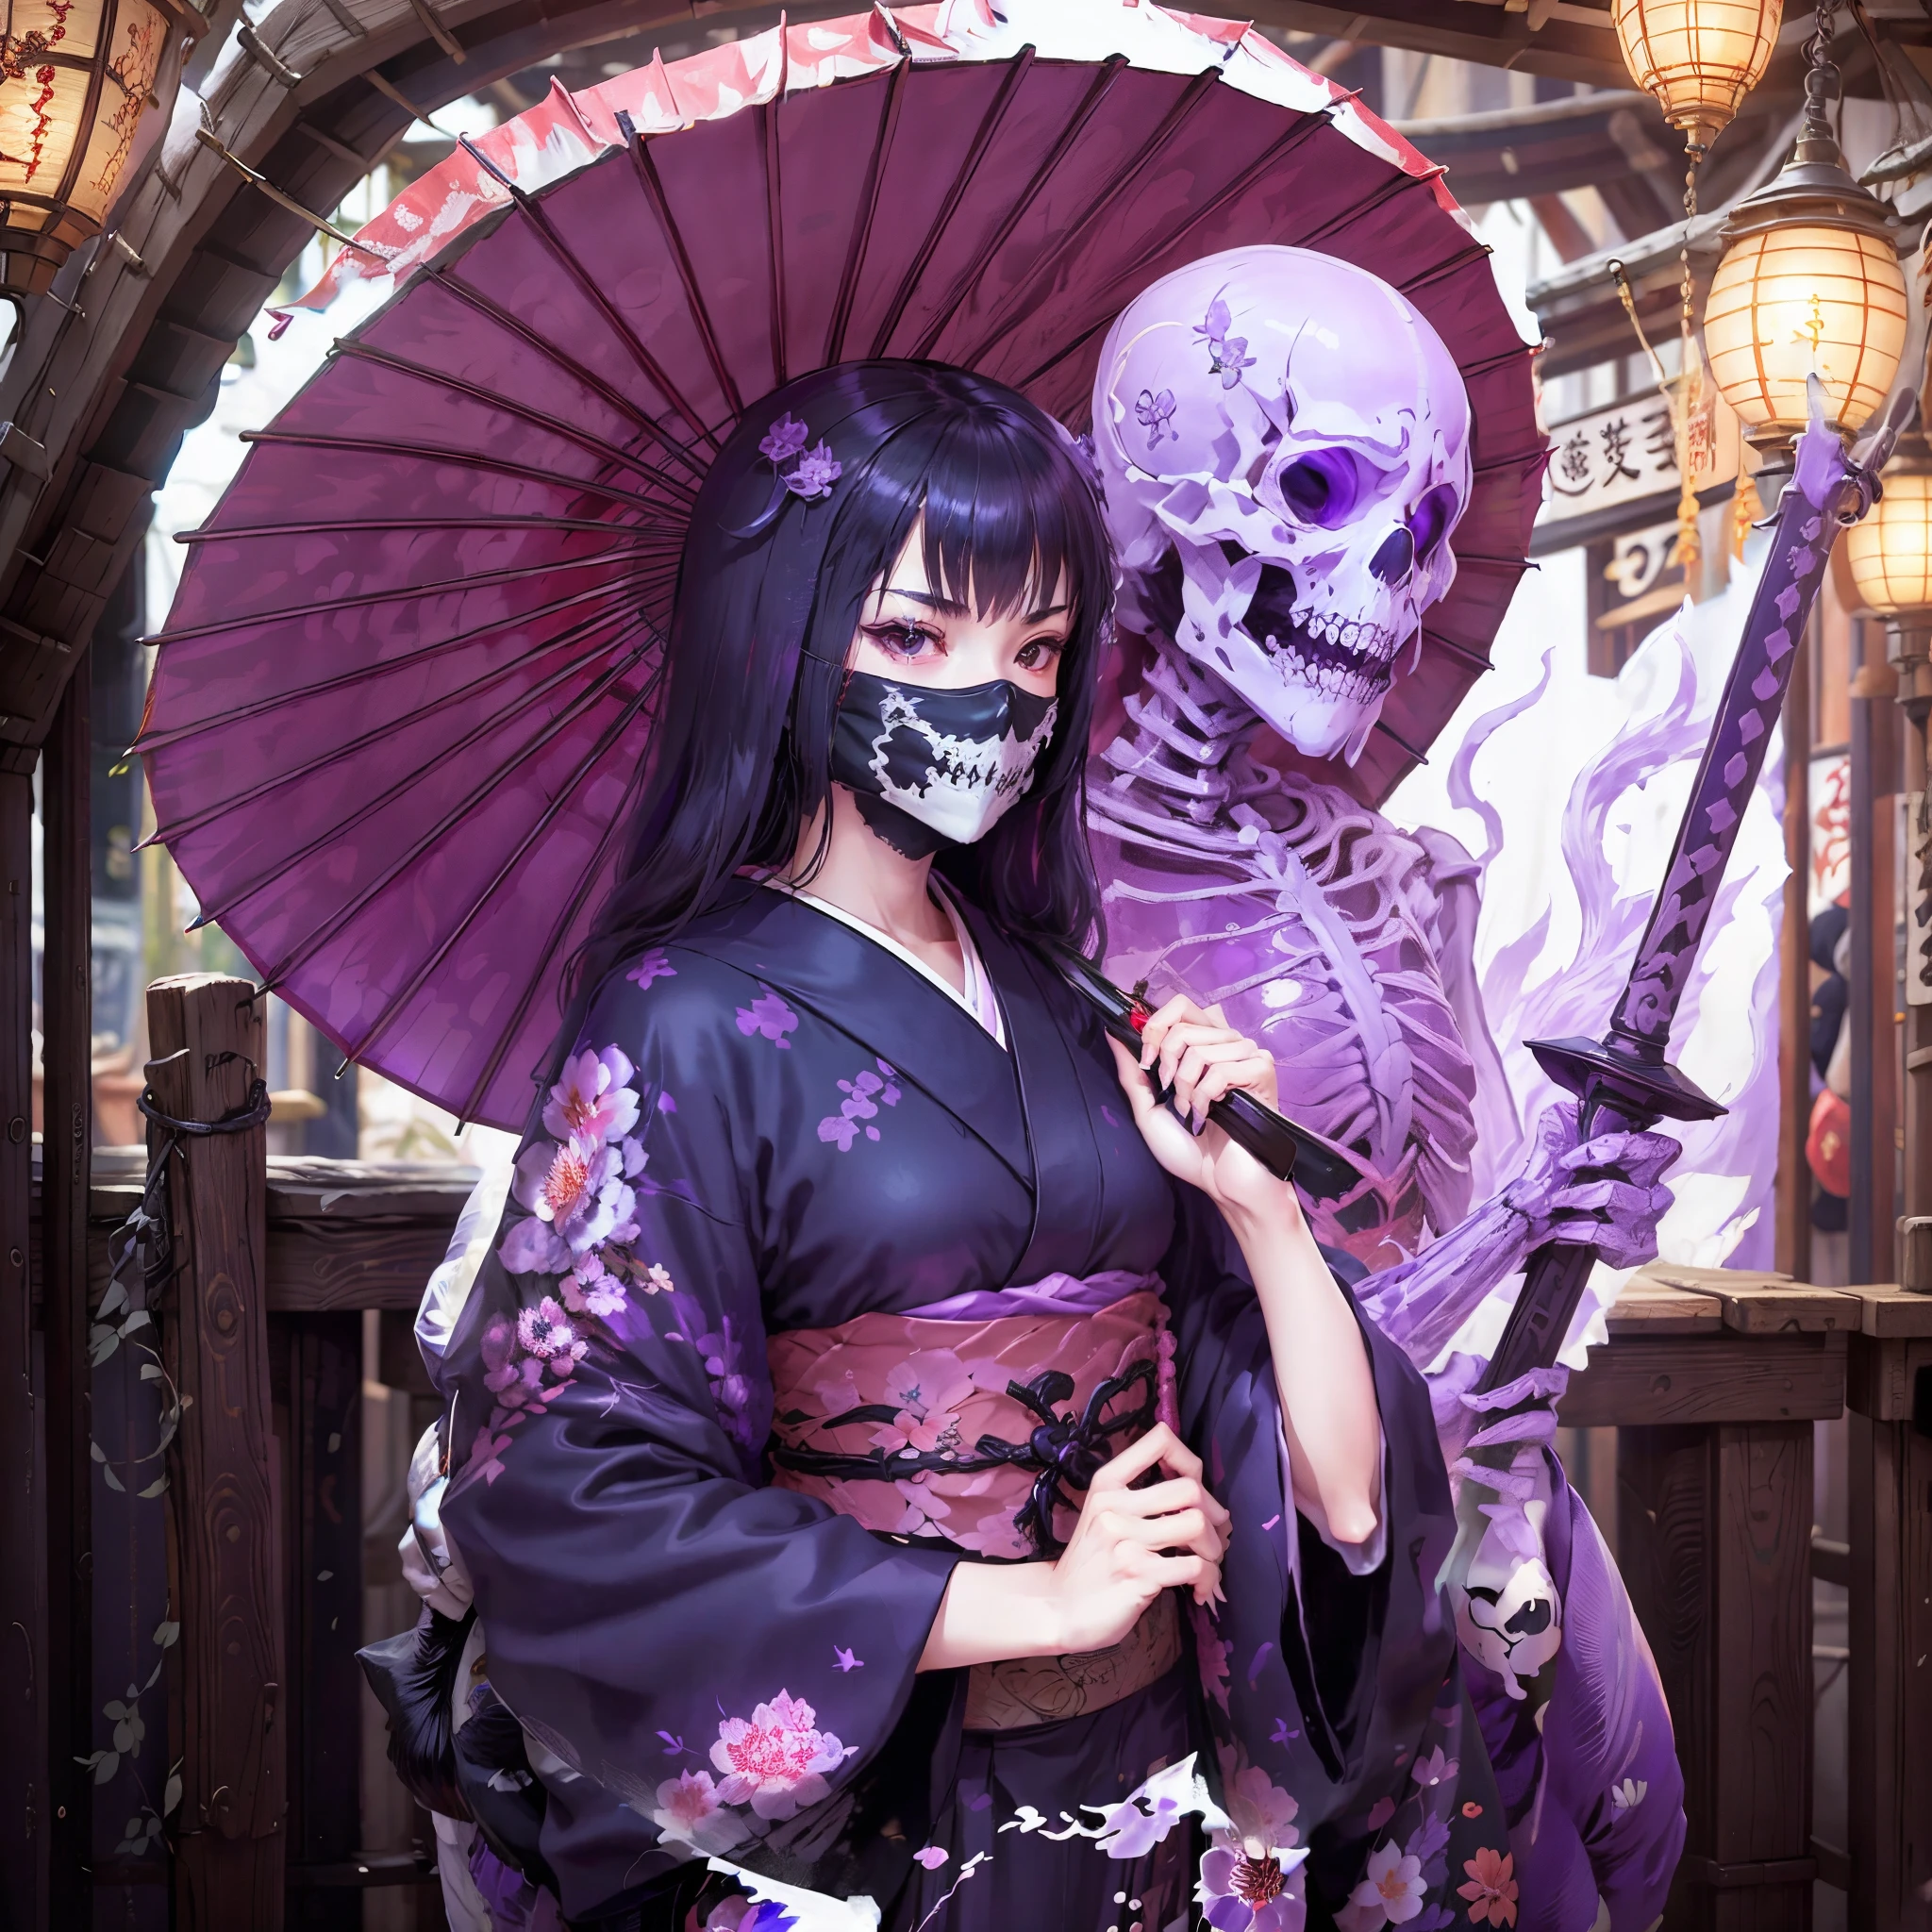 기모노를 입은 소녀. 그녀는 검을 들어올린다. 일본 우산. 뼈를 닳다. 입을 덮는 해골 모양의 마스크. 소녀의 뒤에서 보라색 반투명 해골이 나타난다.. 보라색 불꽃.